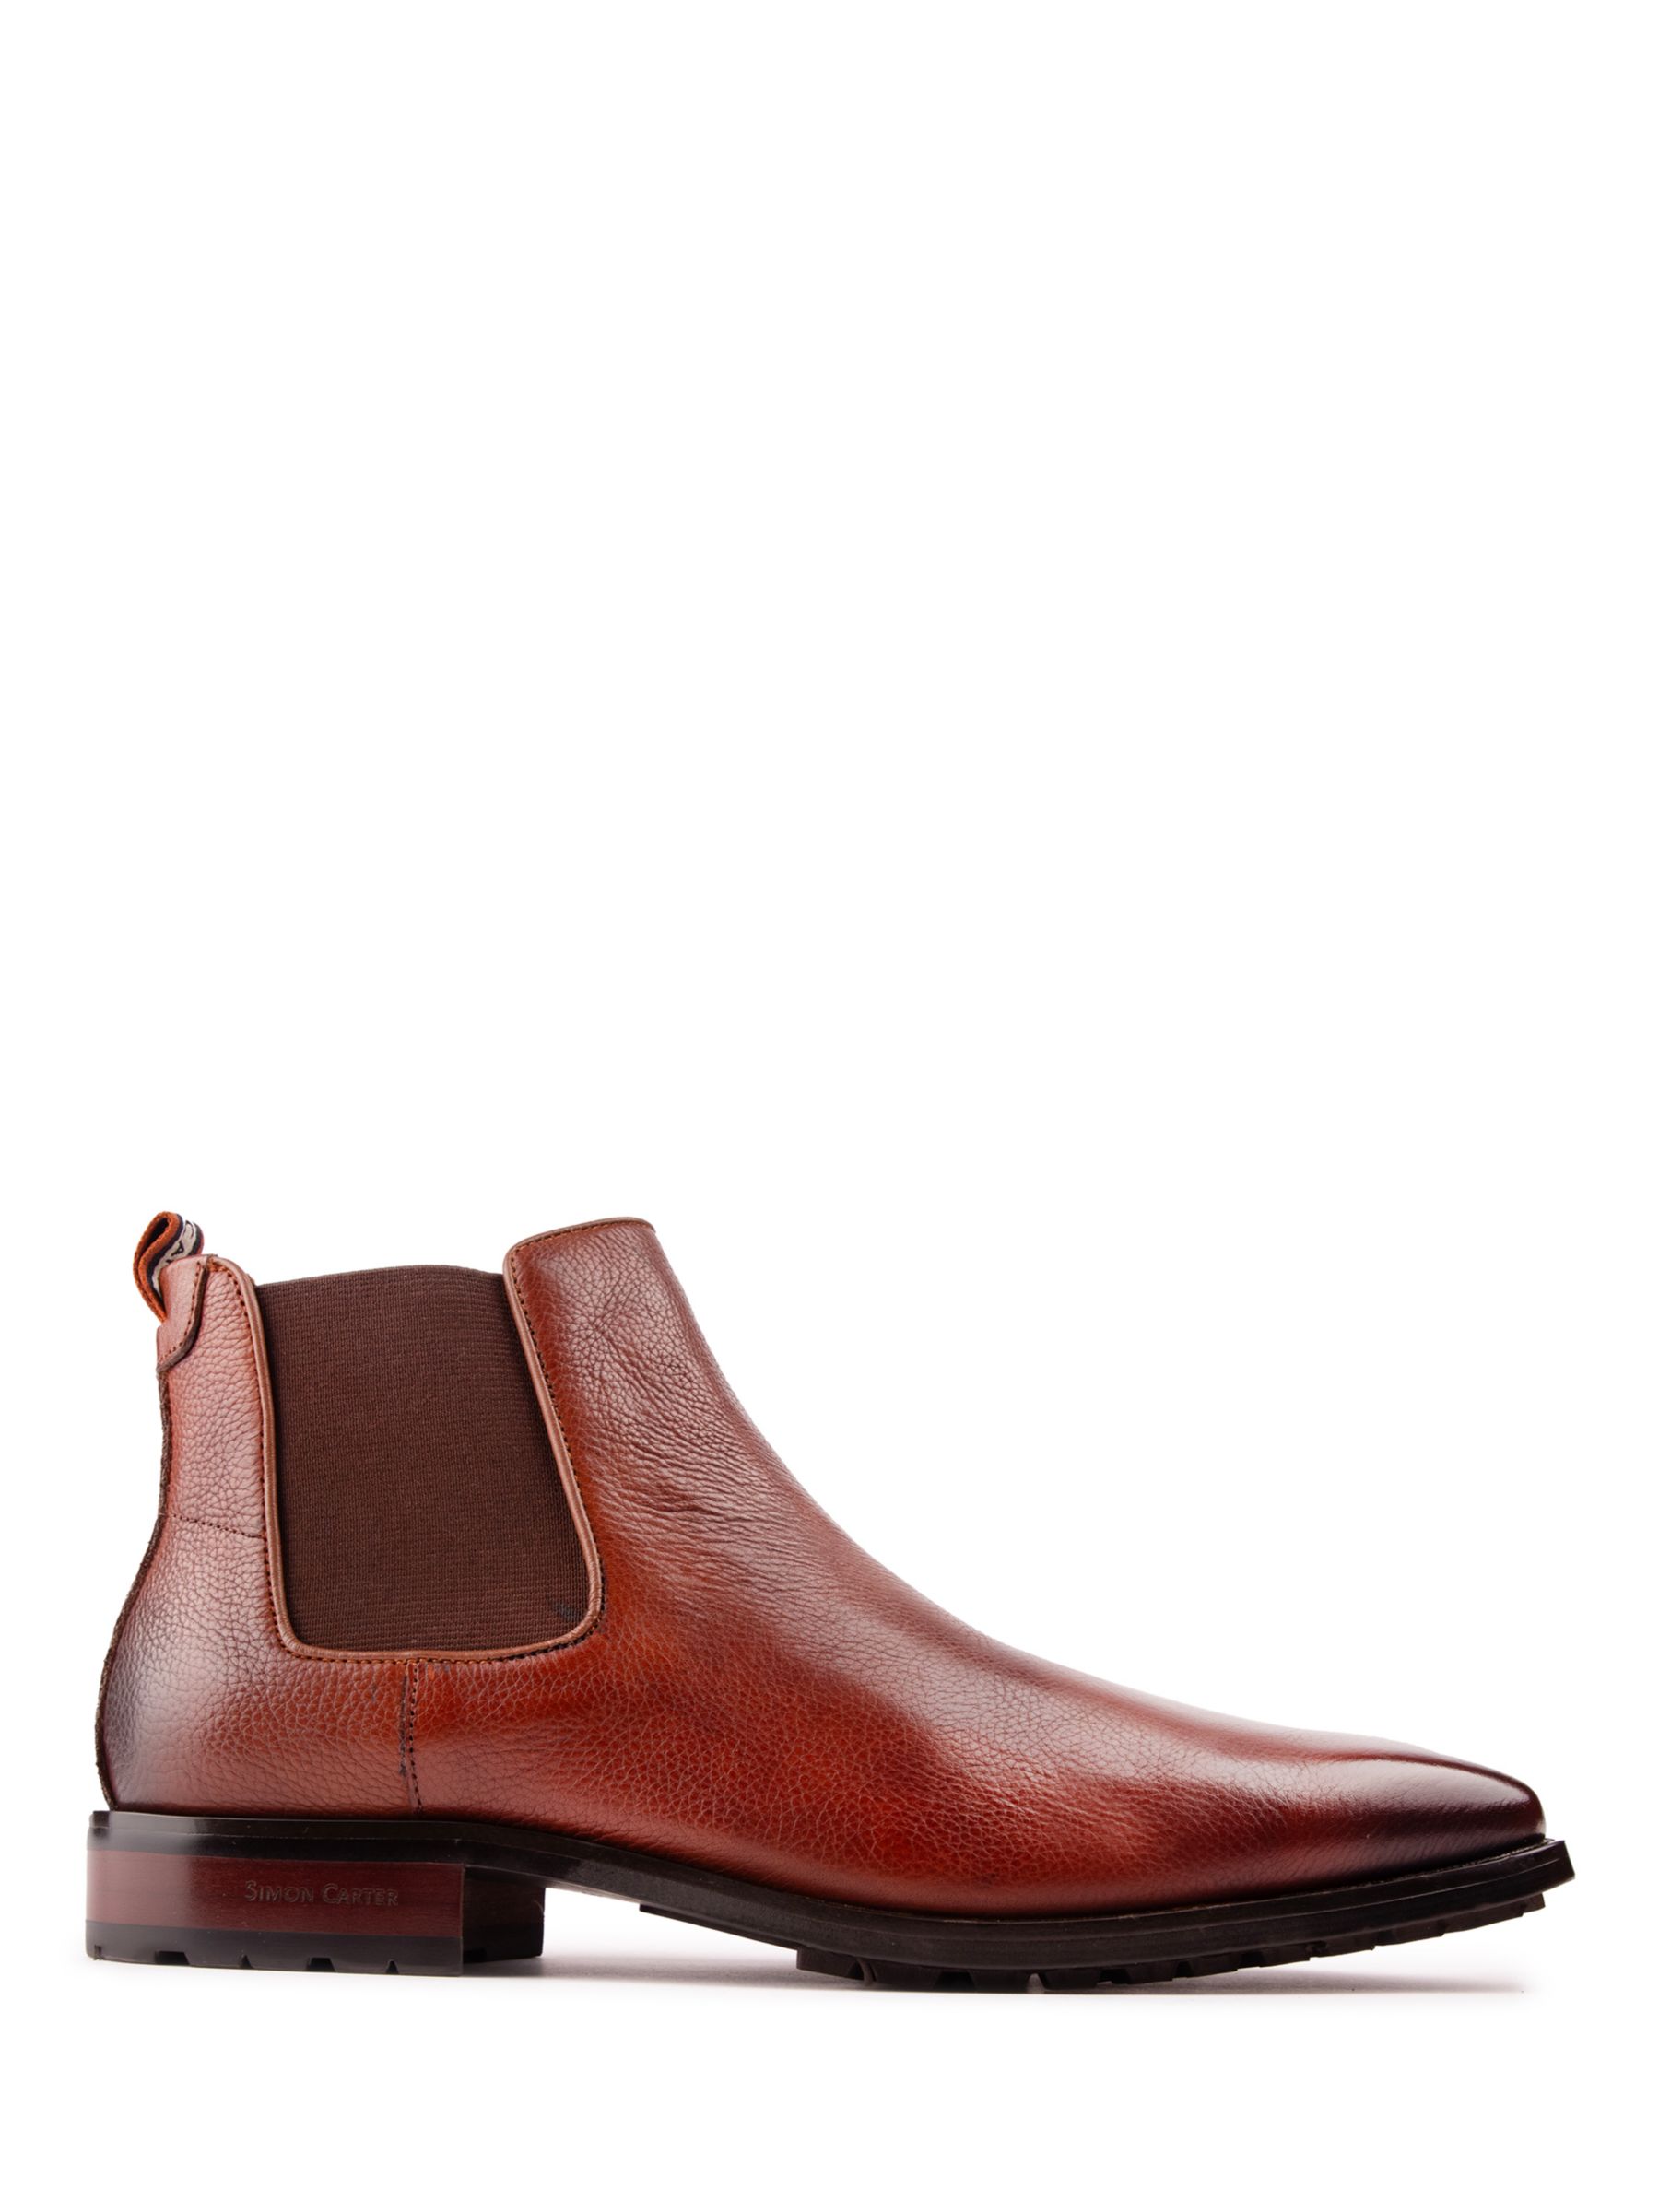 Кожаные ботинки челси Clover Simon Carter, тан ботинки челси мужские из флока классические ботинки ручной работы без застежки черные